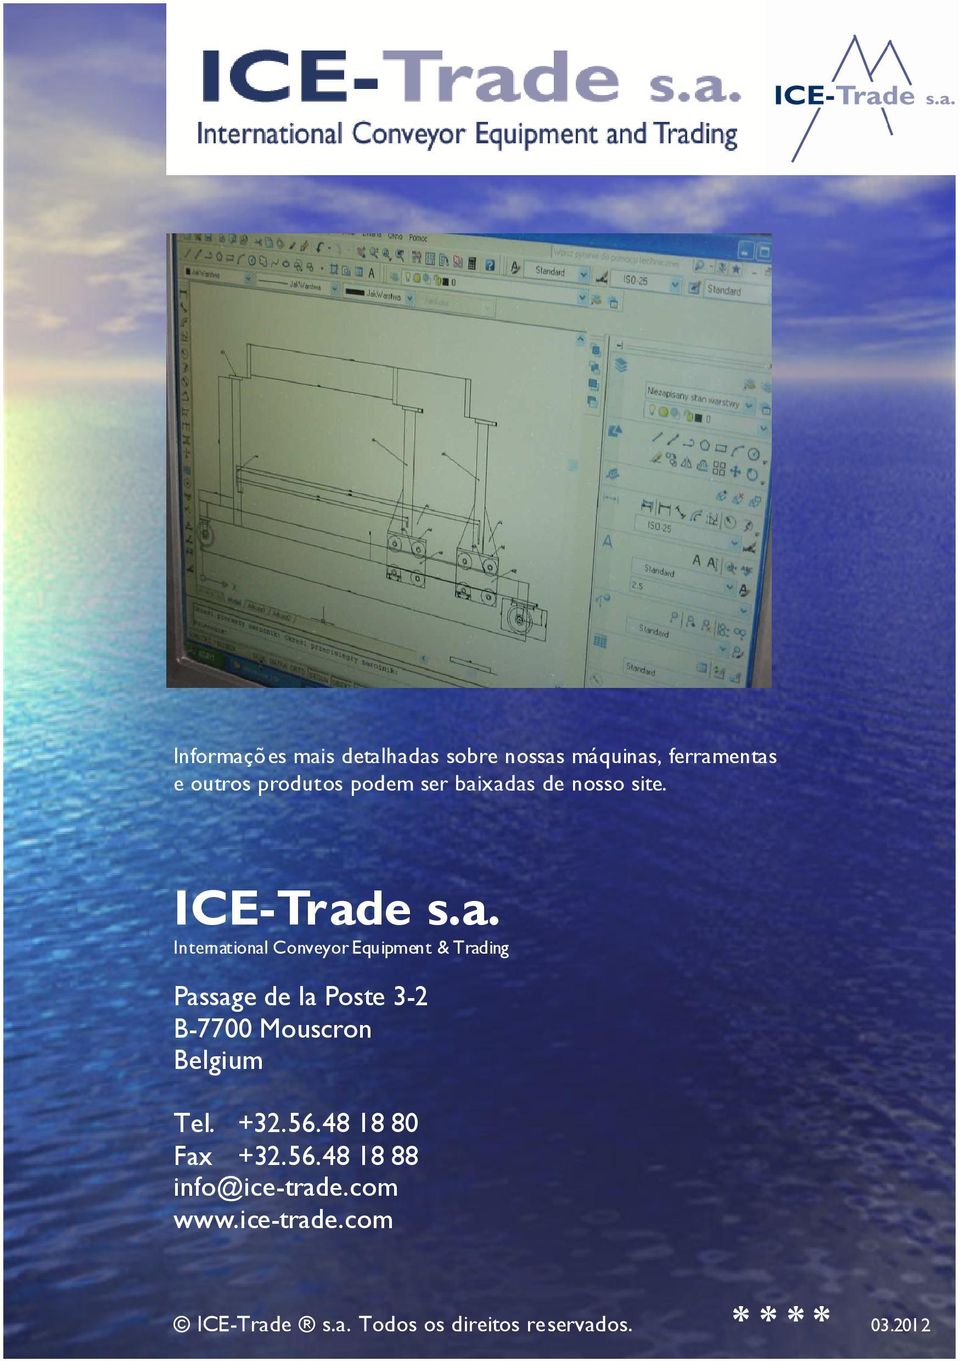 xadas de nosso site. ICE-Trade s.a. International Conveyor Equipment & Trading Passage de